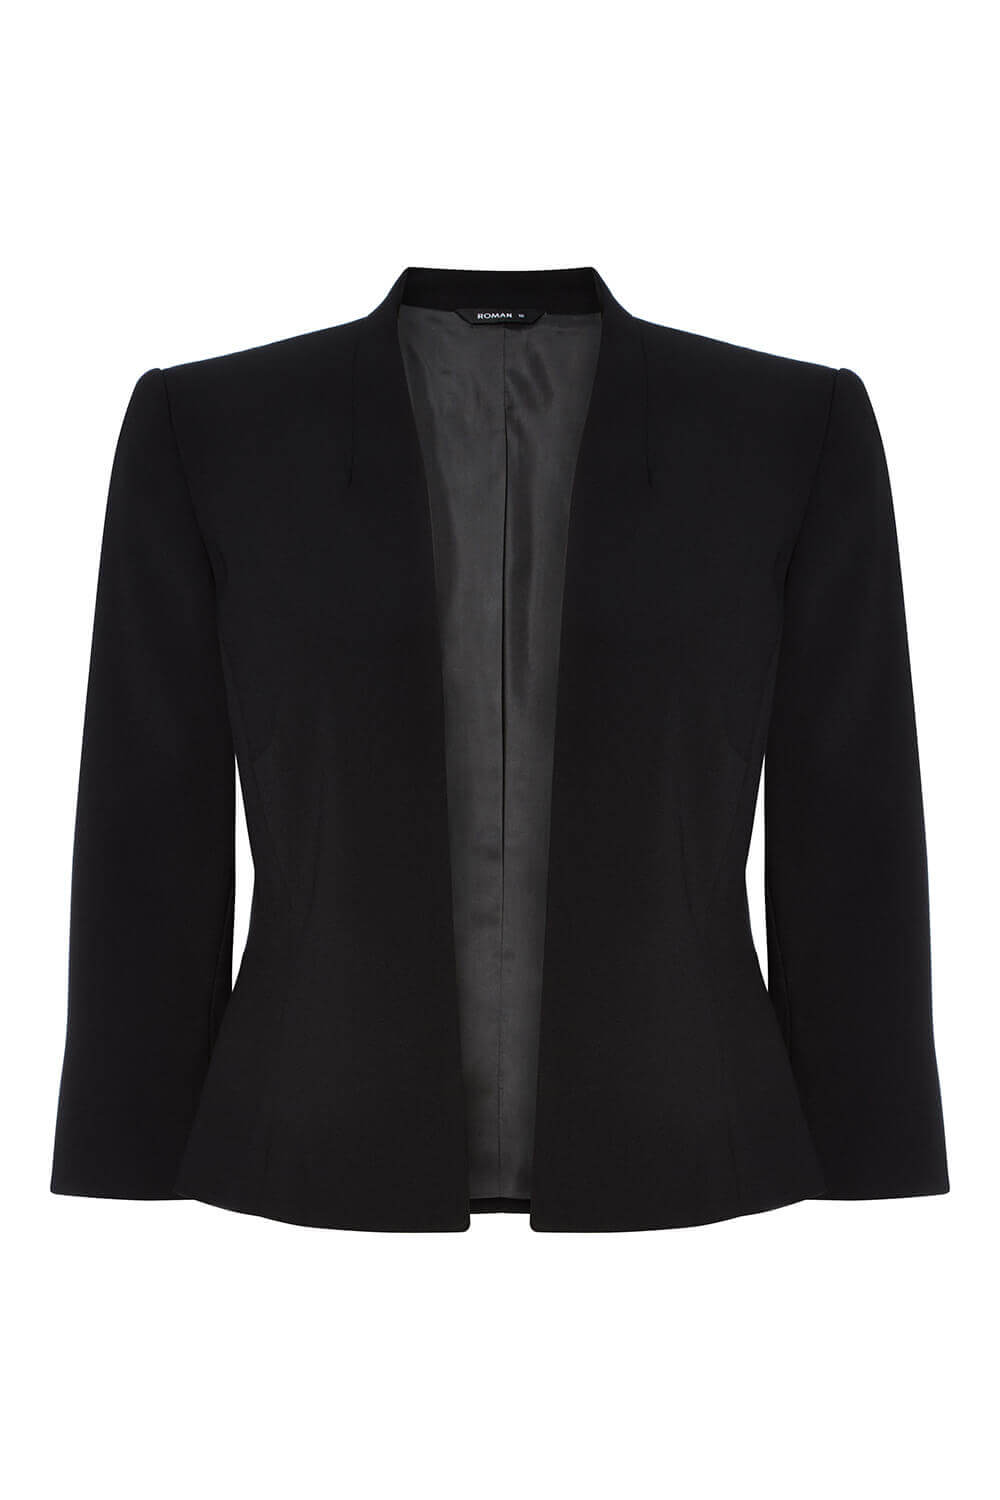 Roman 3/4 Sleeve Rochette Jacket in Black 20 female